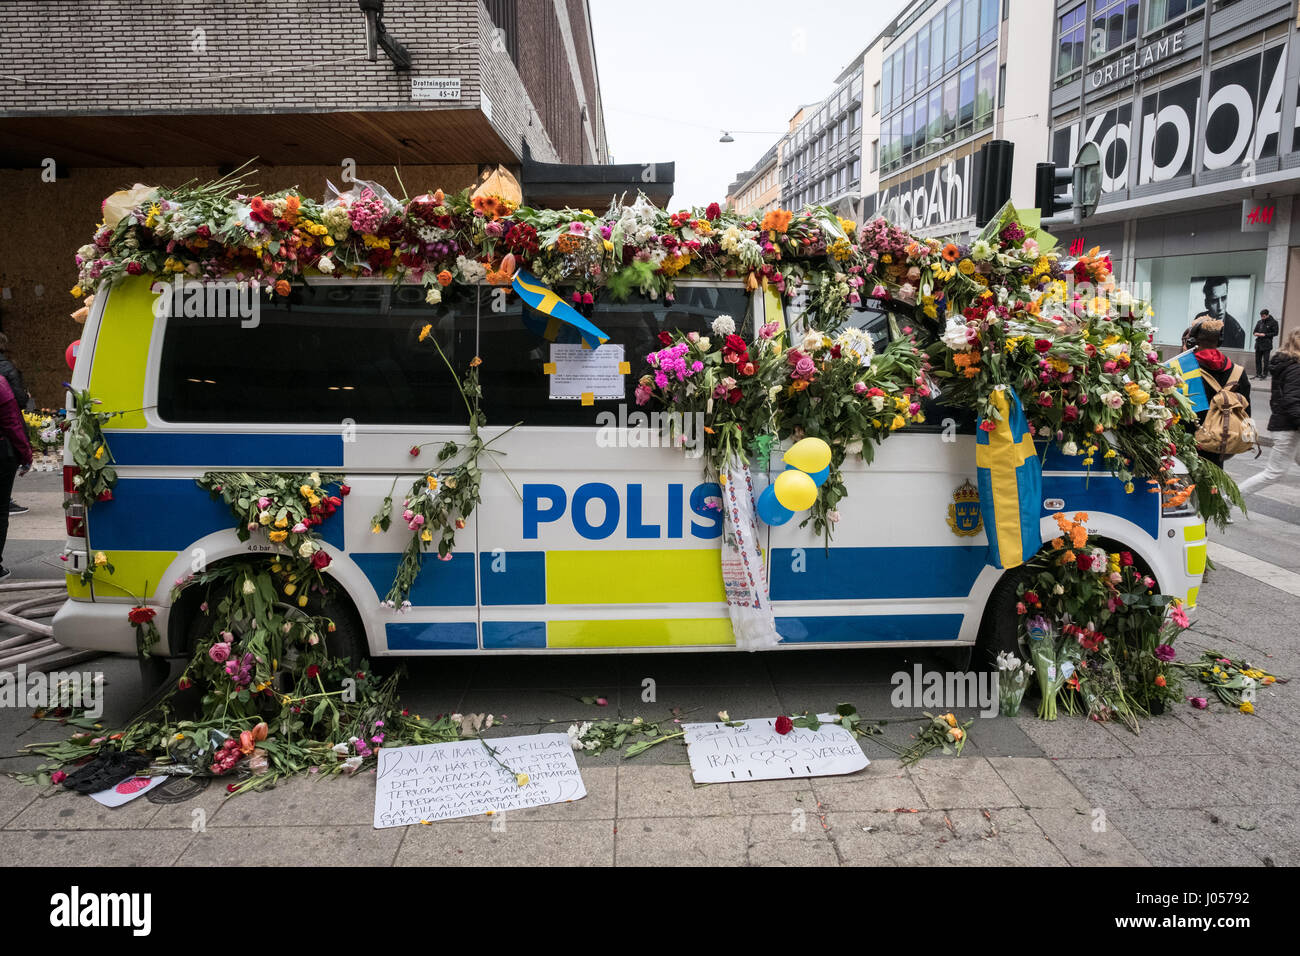 Polizeiwagen mit blumen bedeckt -Fotos und -Bildmaterial in hoher Auflösung  – Alamy